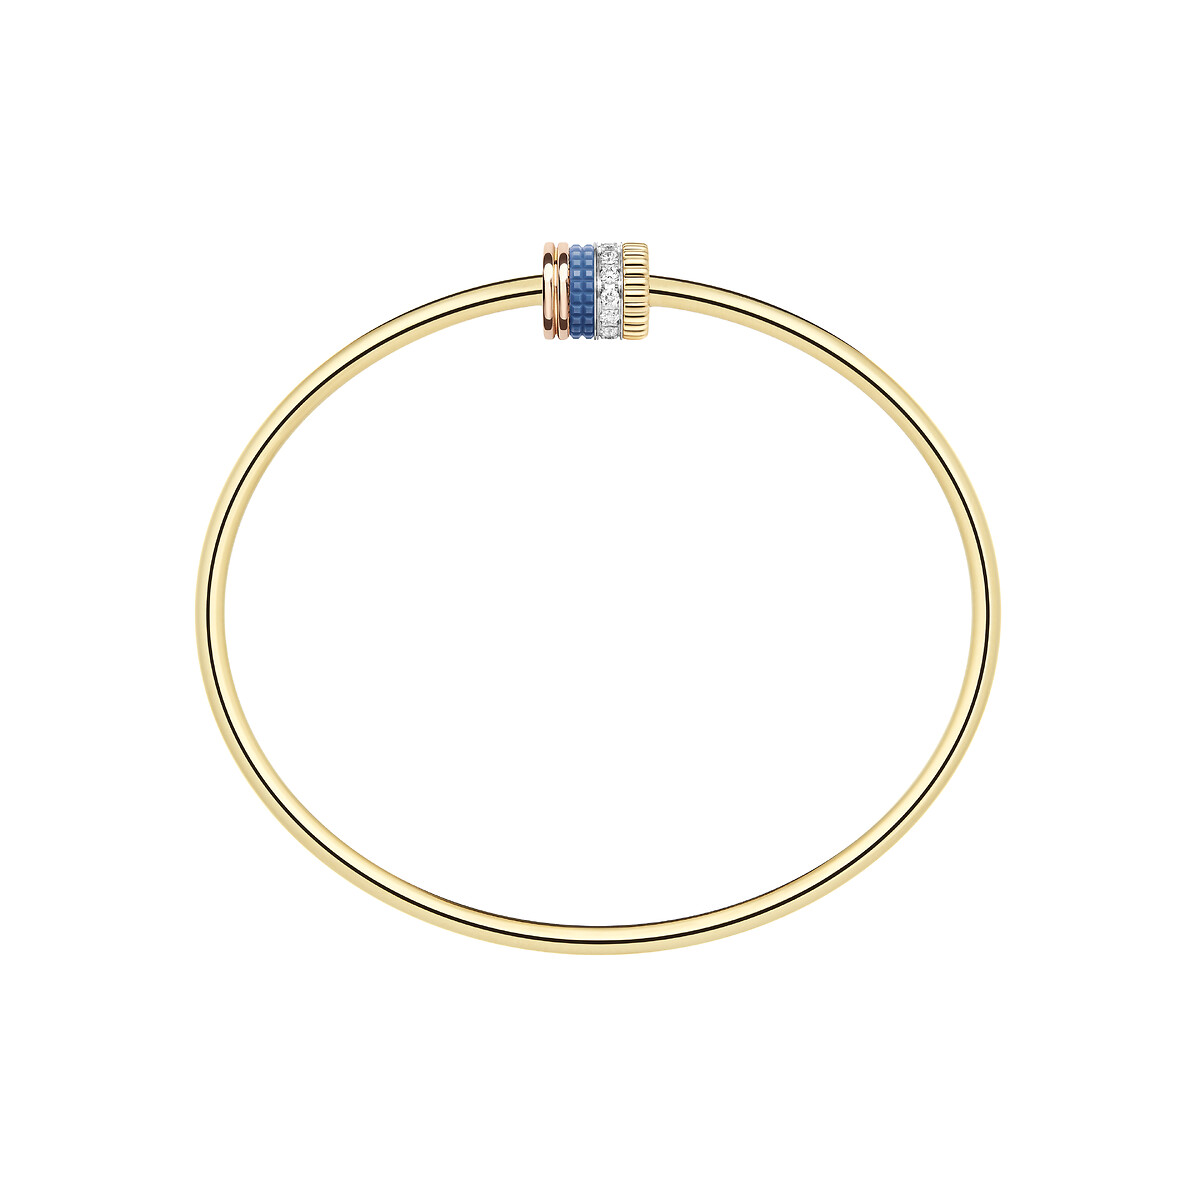 Second product packshot​ Quatre Blue Edition Bracelet